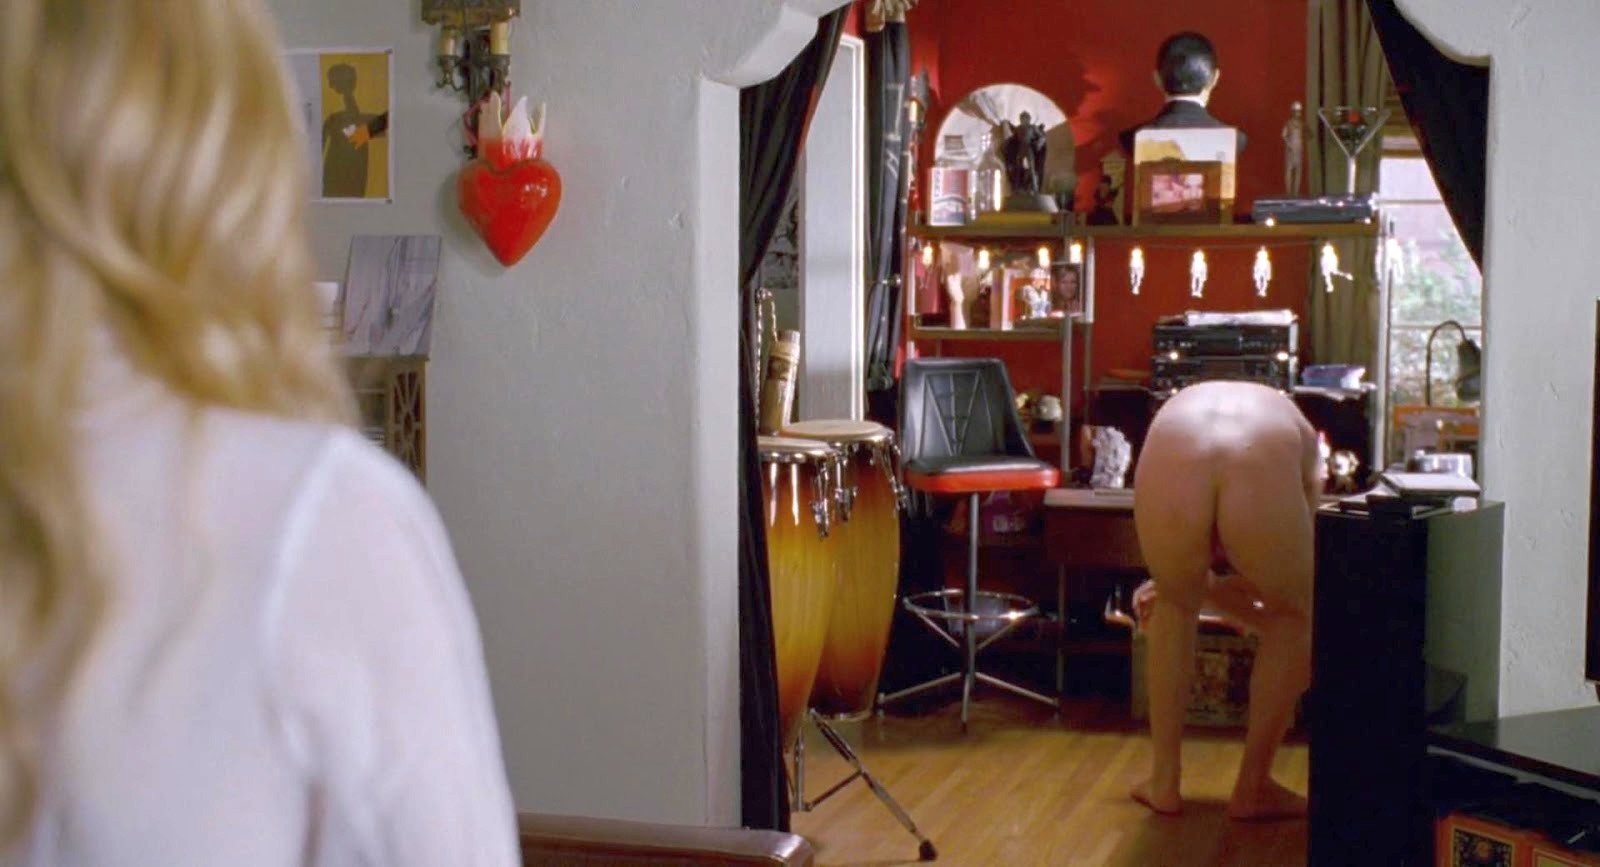 Jason Segel nudo in "Non mi scaricare" (2008) - Nudi al cinema.